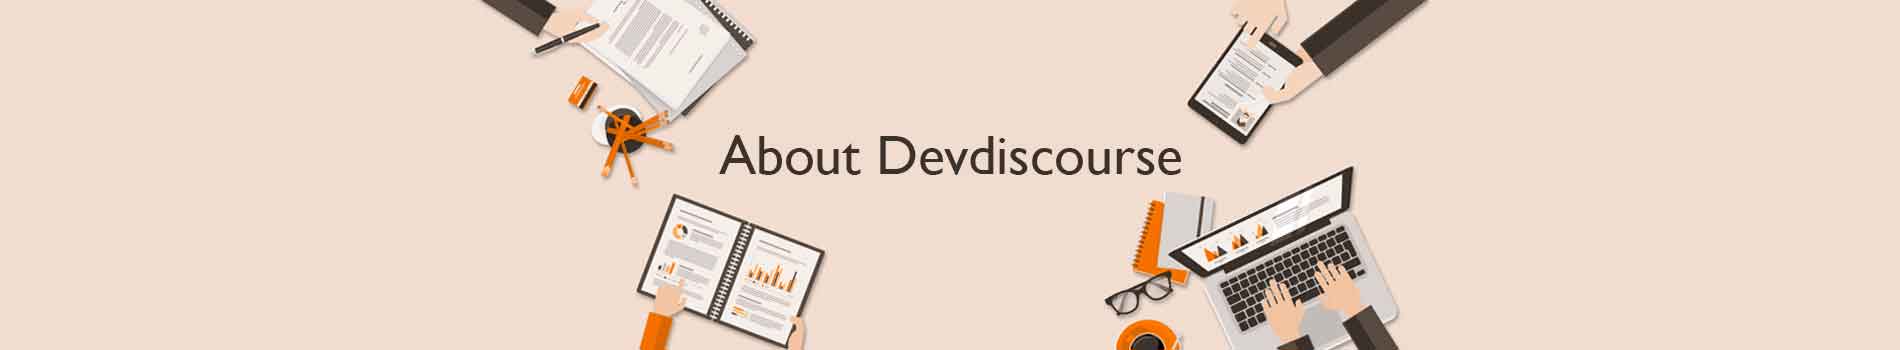 About Devdiscourse